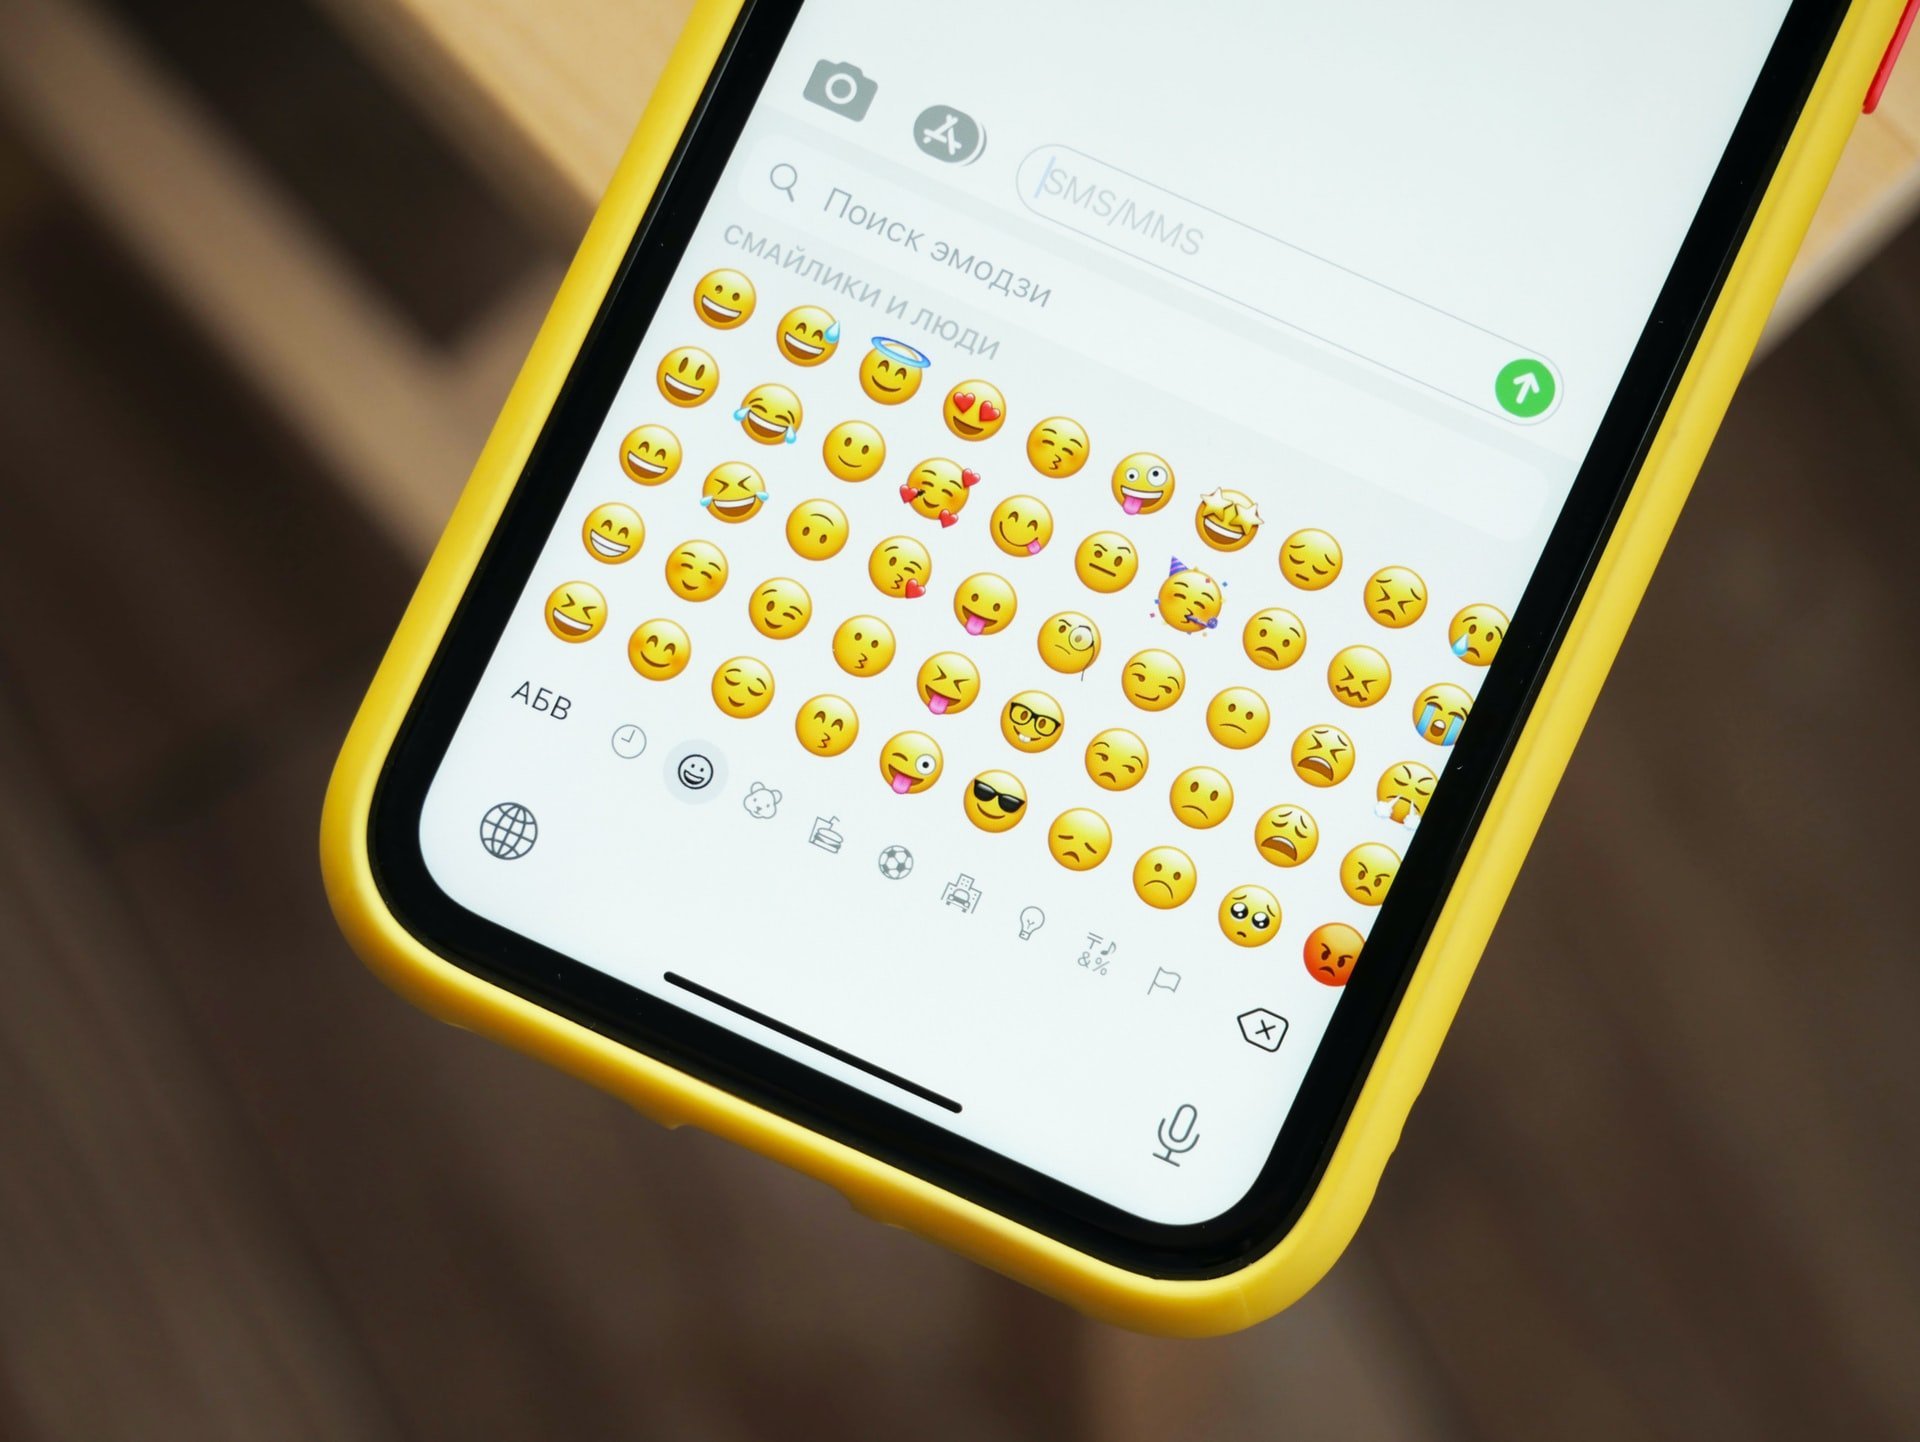 Celular ligado com emojis no teclado.